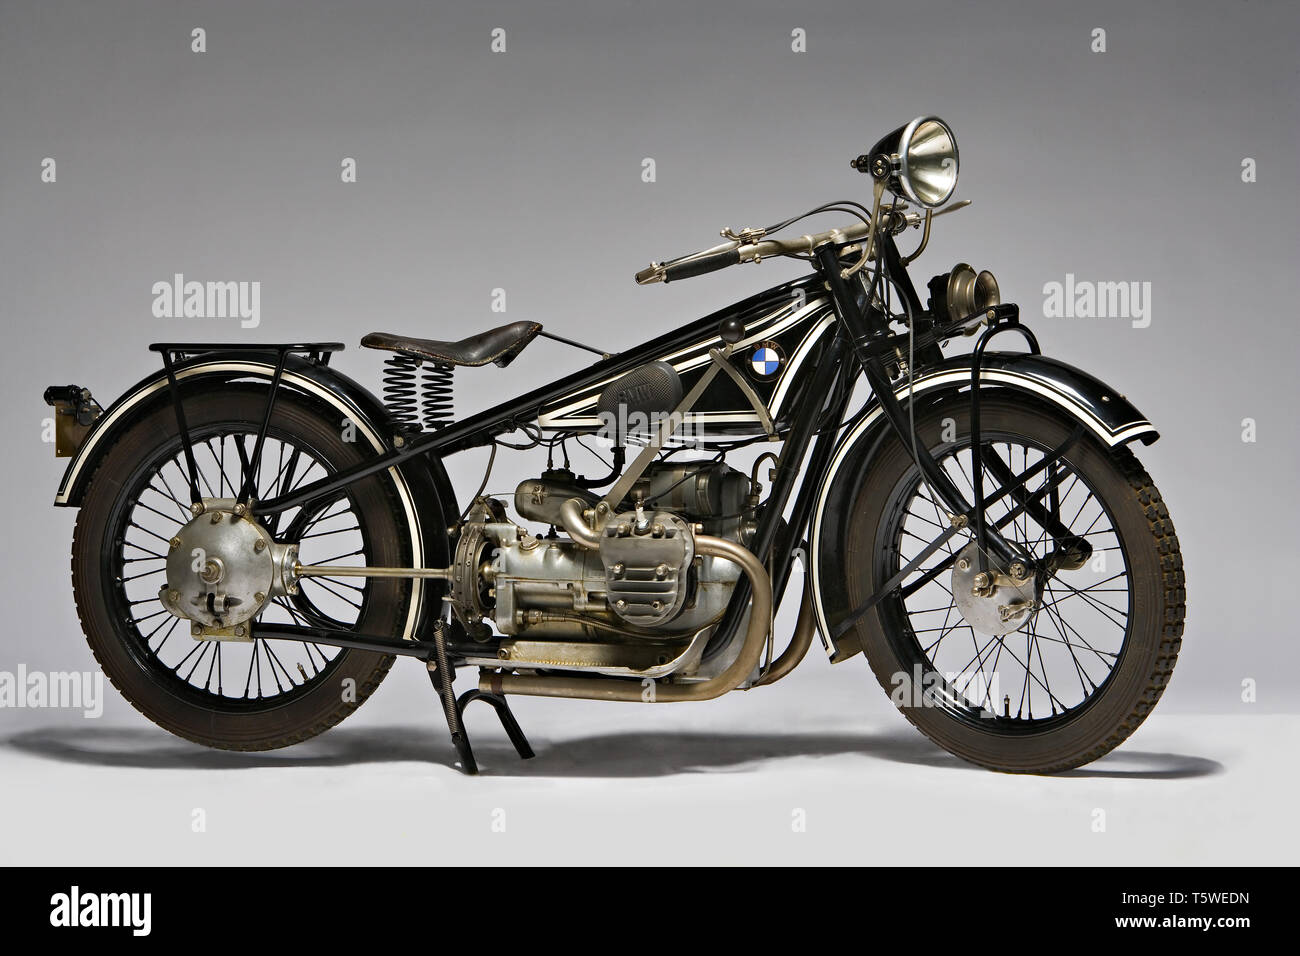 Moto d'epoca BMW R42 Marca: Bayerische Motoren Werke modello: R42 nazione: Germania - Monaco Anno: 1927 condizioni: restaurata Cili Stockfoto